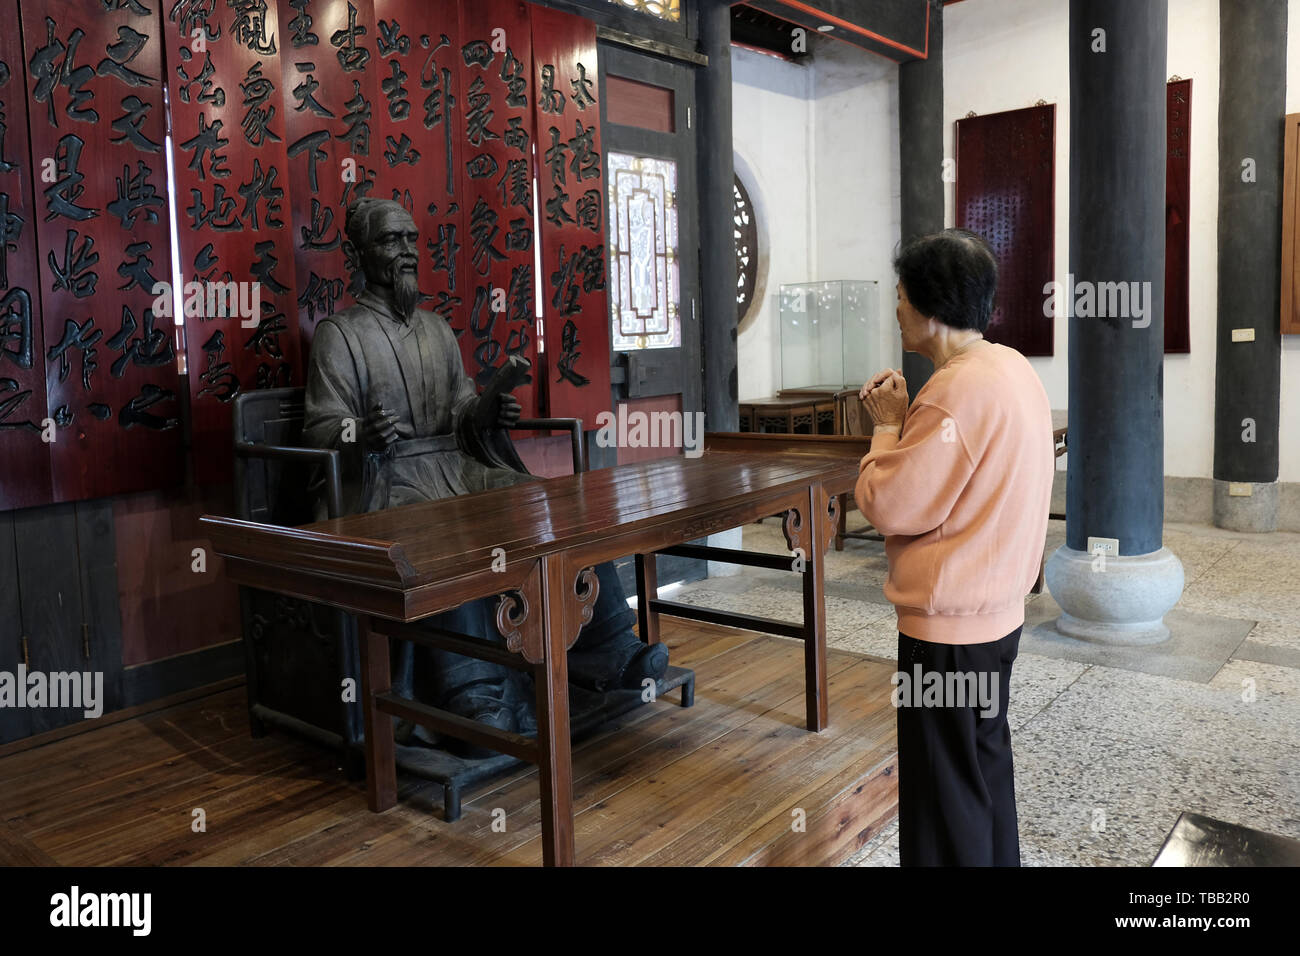 Eine Frau betet an dem Schrein, der Zhu Zi gewidmet ist und in der 1780 gegründeten Wujiang Akademie auf der Insel Kinmen in Taiwan errichtet wurde. ZhuZi war ein berühmter Rationalist der konfuzianischen Philosophie aus der Südlichen Song-Dynastie, der die frühesten Yennan-Akademie in Kinmen gründete, wo die Schüler Bildung erhalten konnten. Stockfoto